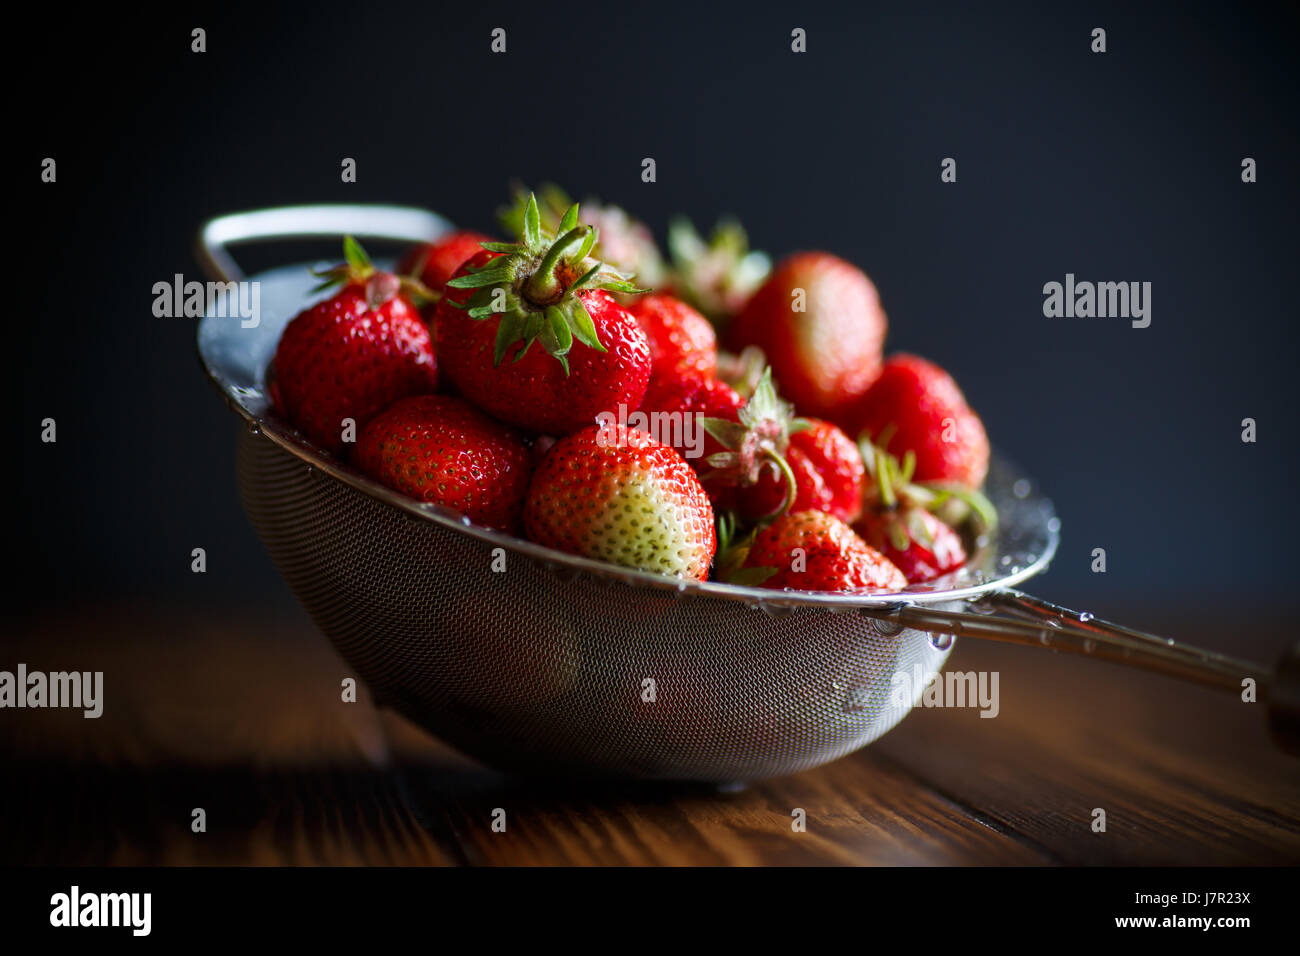 ripe red strawberries Stock Photo